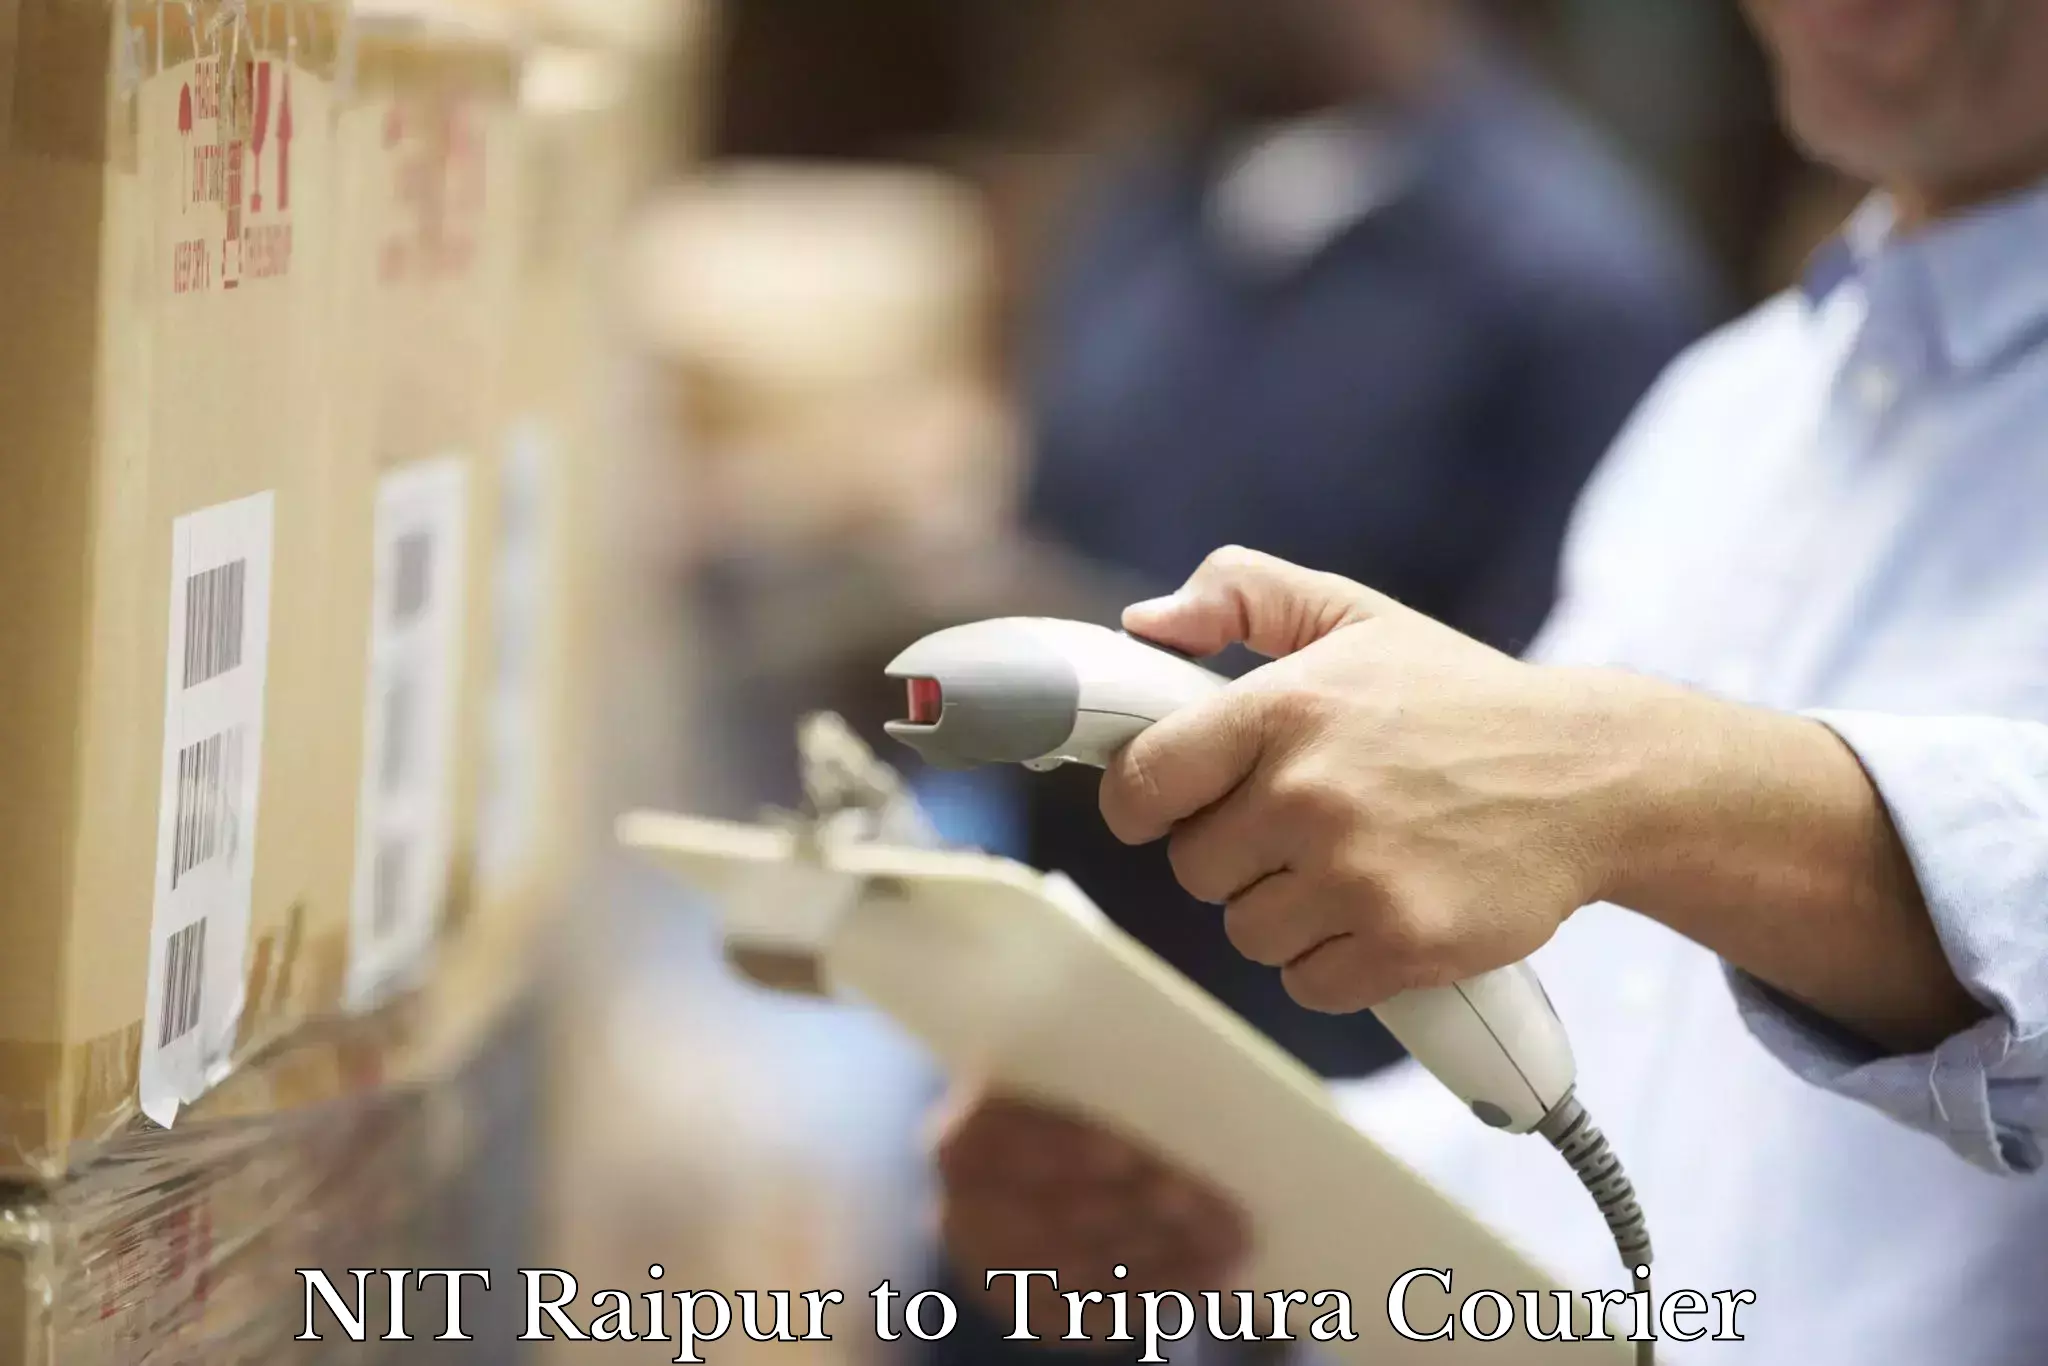 Quick dispatch service NIT Raipur to Dharmanagar